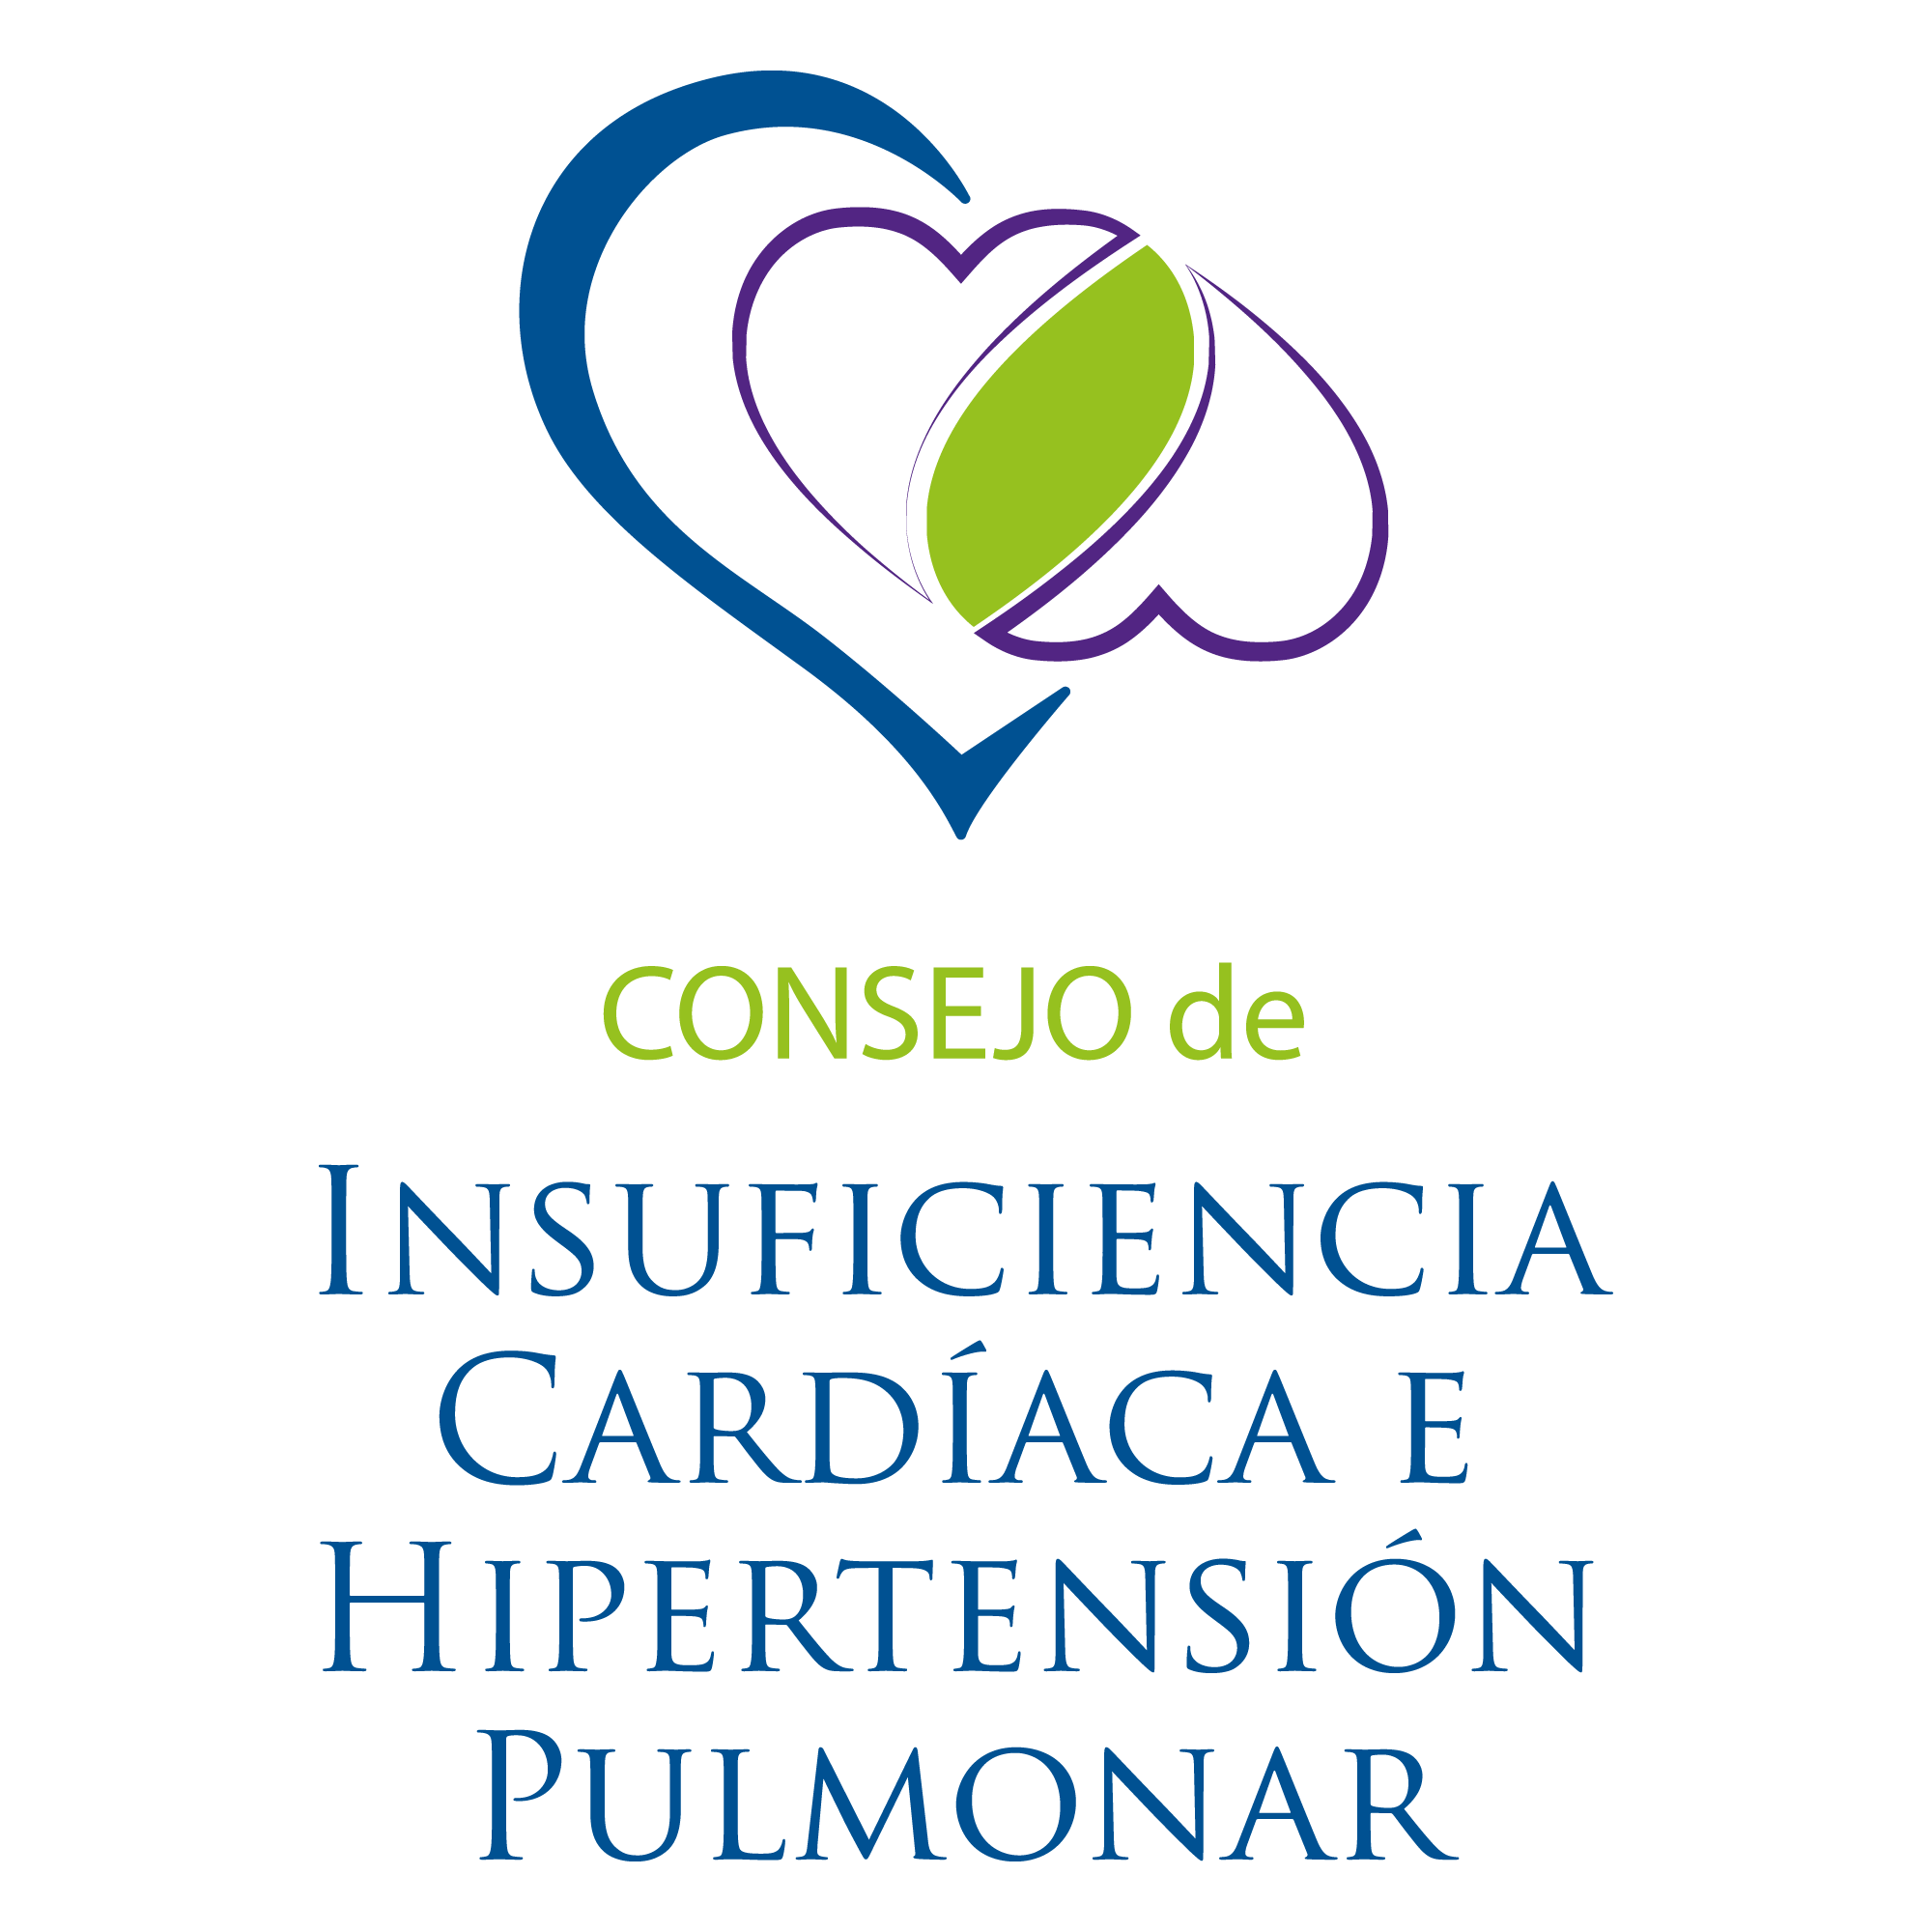 Consejo de Insuficiencia Cardíaca e Hipertensión Pulmonar